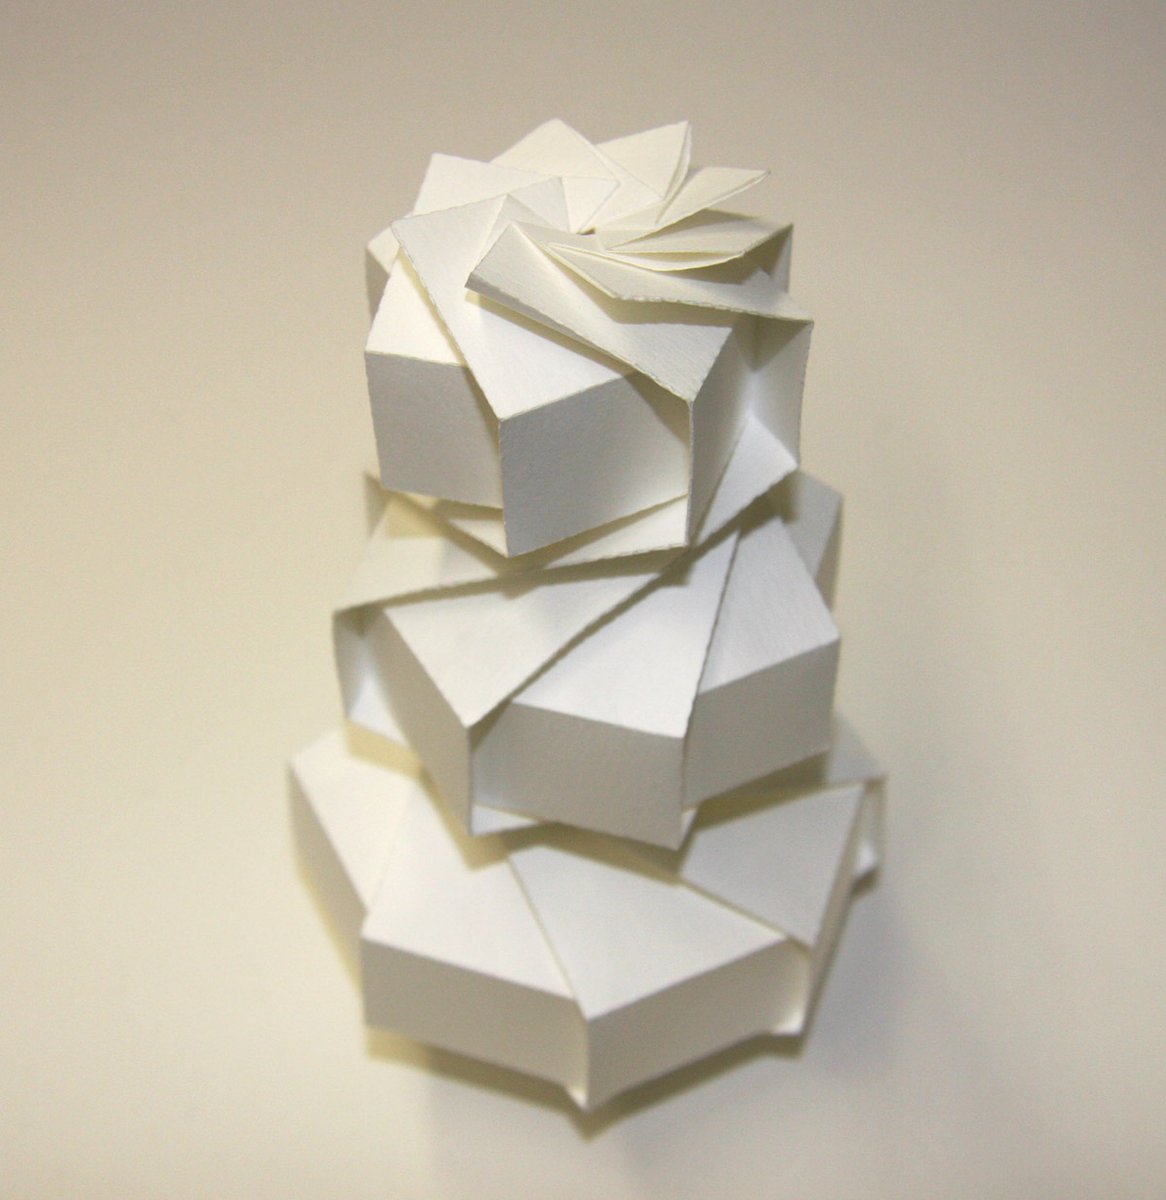 三谷 純 Jun Mitani 最近 自分の折り紙についてほとんどツイートしてないので 過去を振り返りつつ いくつか作品紹介したいと思います 08年に 立体的な形を1枚の紙で作るためのソフトウェアを開発し このような幾何学的な折り紙作品を作れるように